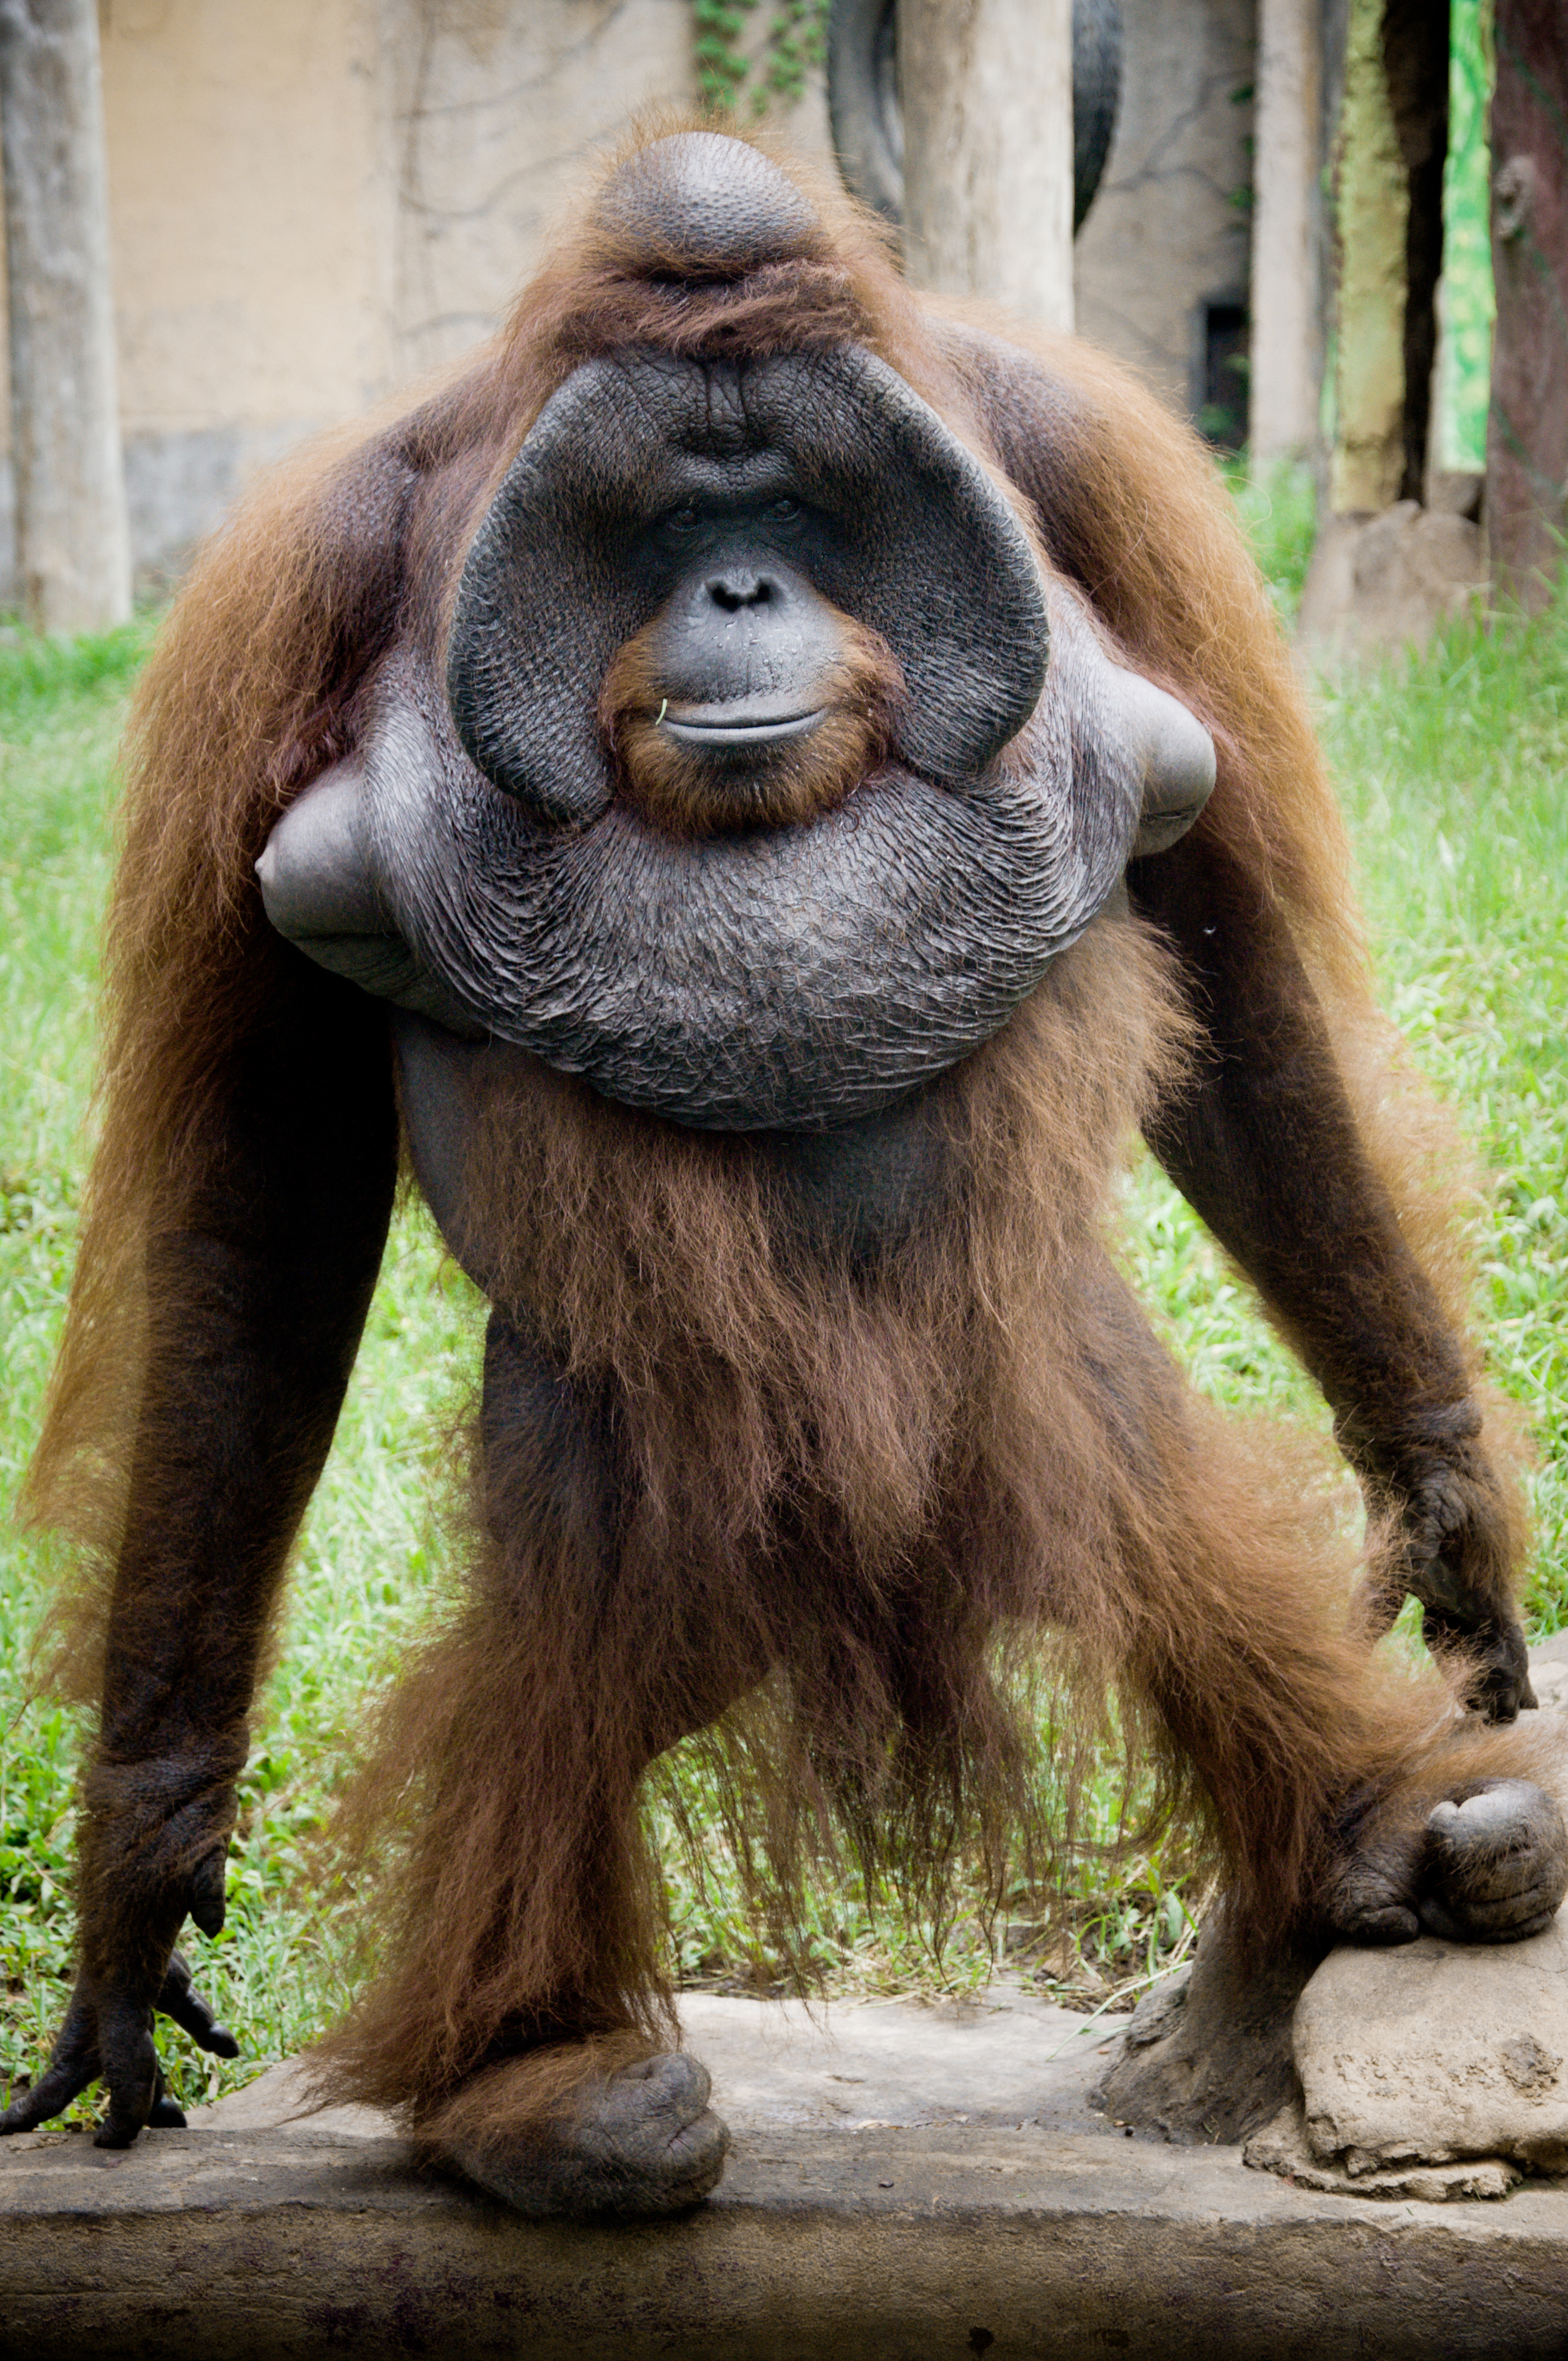 Orangutan, stock.xchng